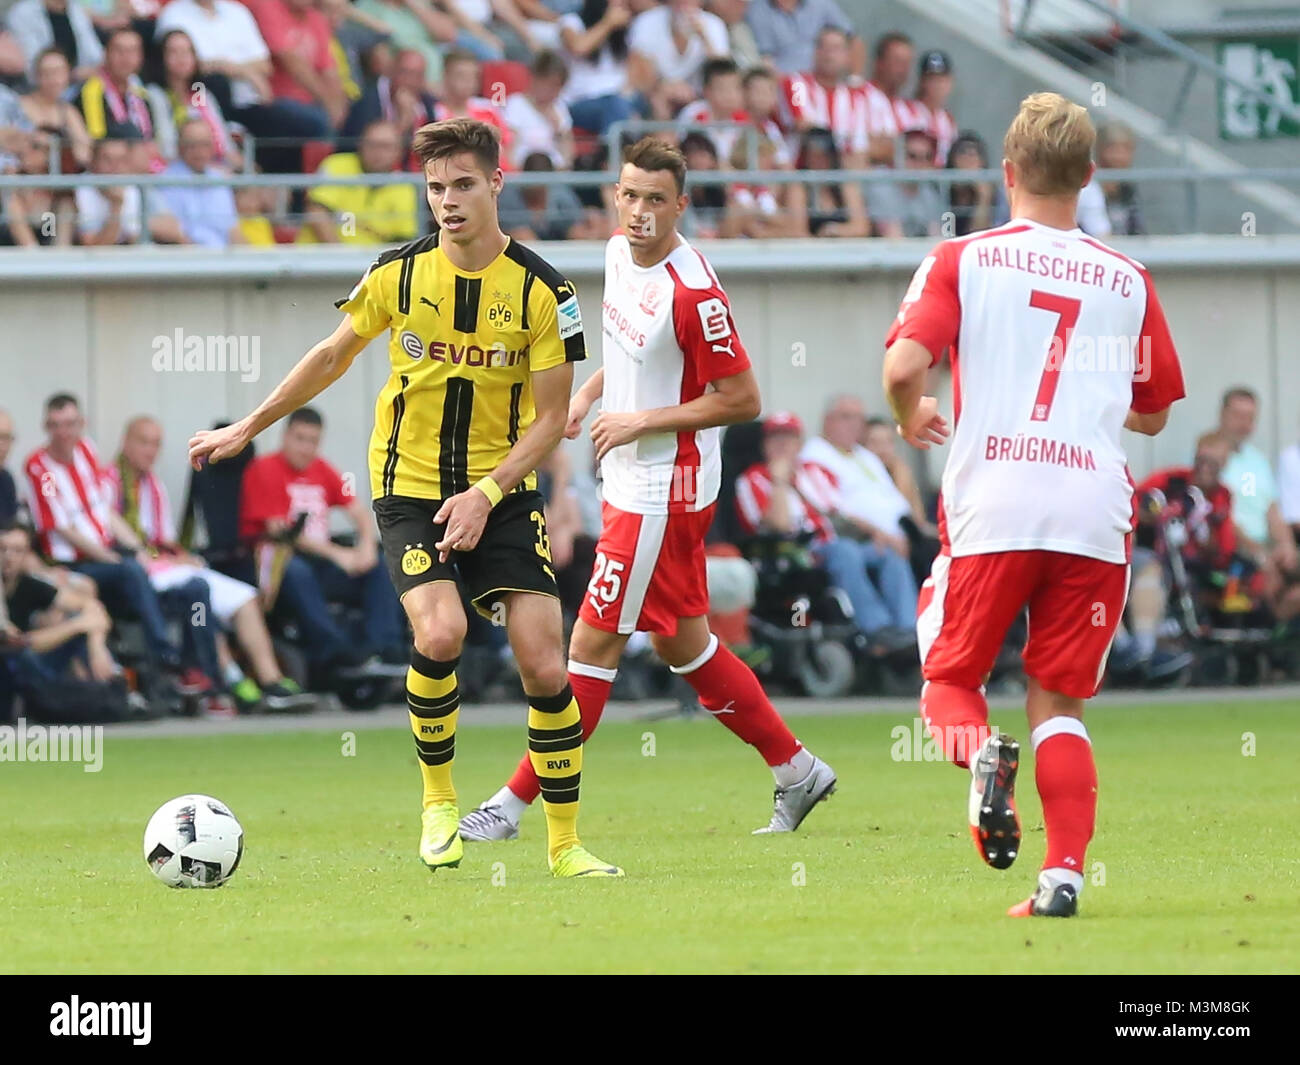 Testspiel Hallescher FC gegen Borussia Dortmund am 23.08.2016 Erdgas im Sportpark Halle/Saale Foto Stock